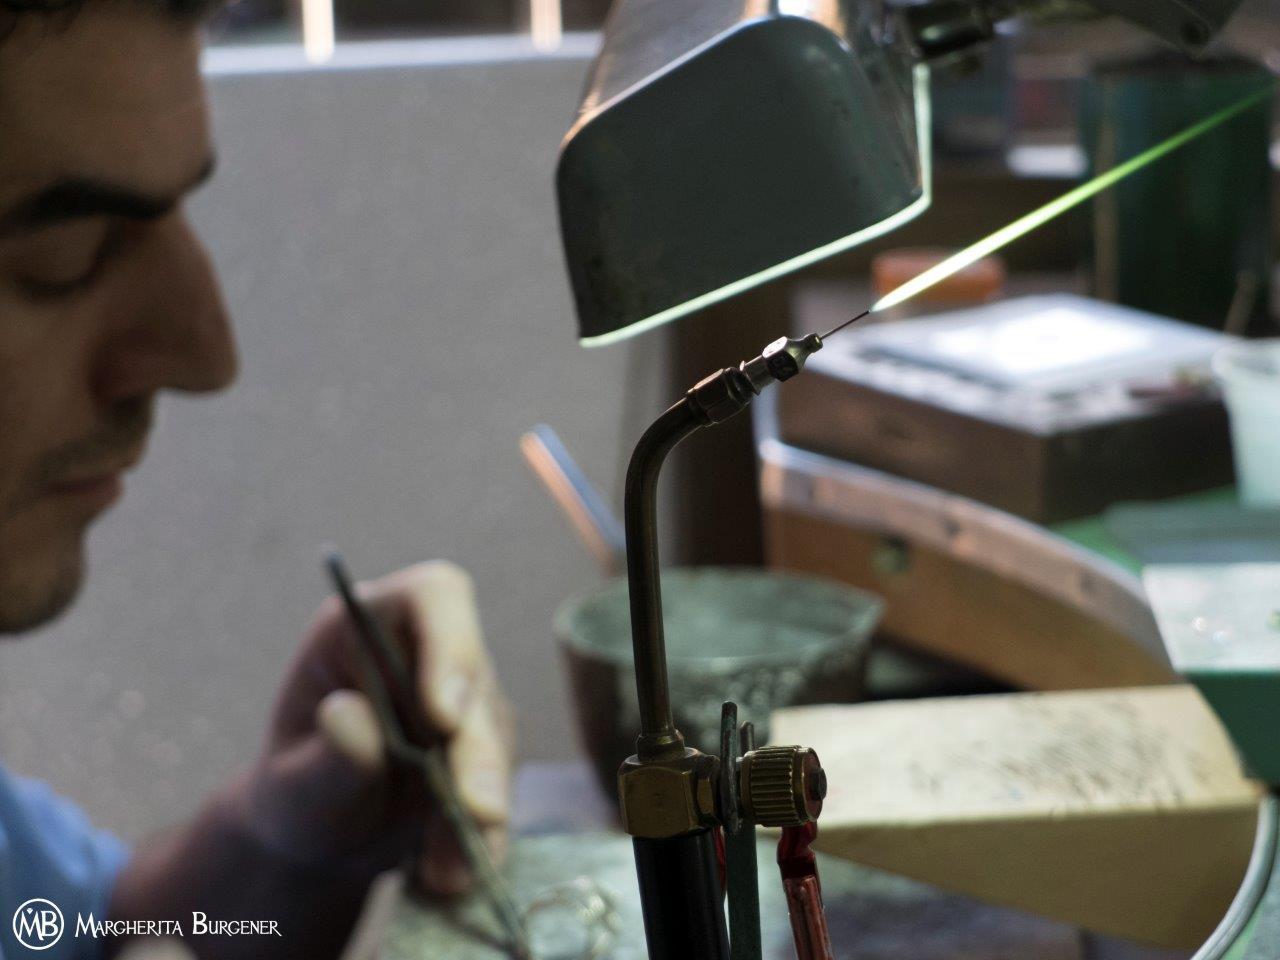 Die traditionelle Schleife, die von Fachleuten in der Schmuckherstellung verwendet wird, mit der Inschrift graviert und gelasert
mit dem Namen und dem Logo Margherita Burgener.
Ein interessantes und nützliches Werkzeug für alle Schmuckliebhaber und